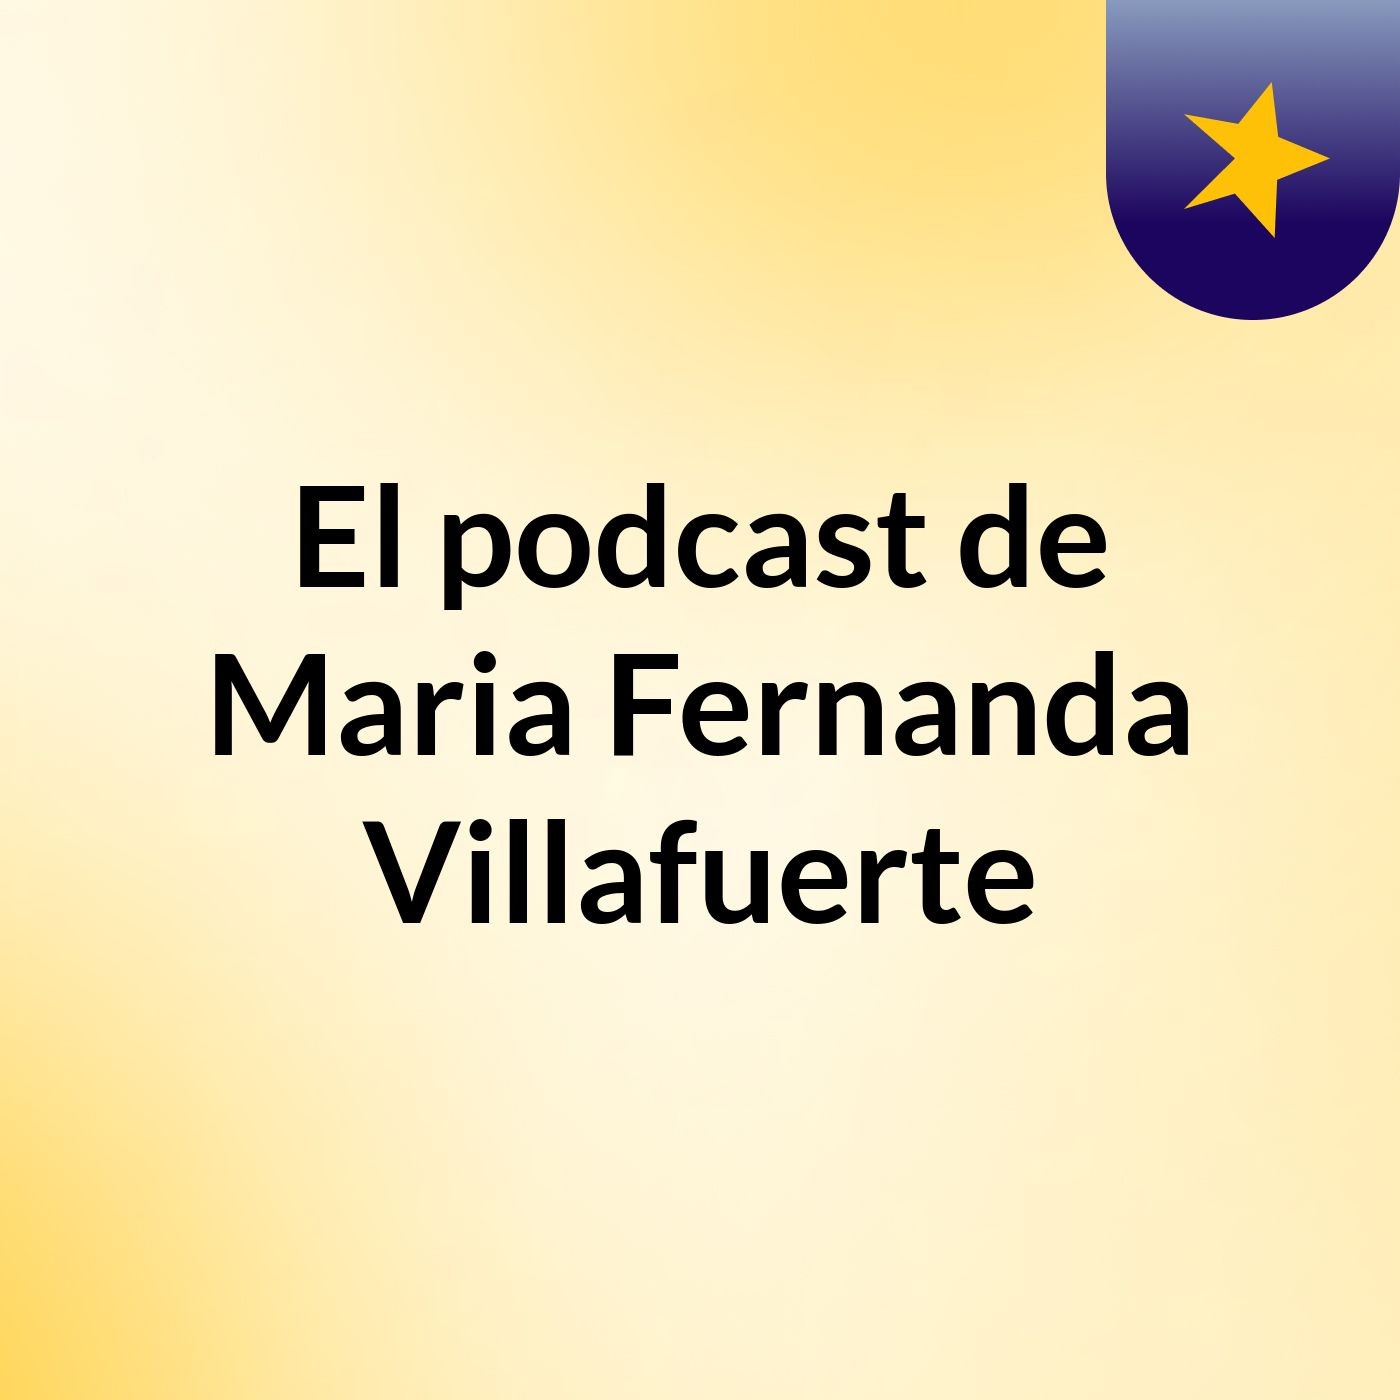 El podcast de Maria Fernanda Villafuerte